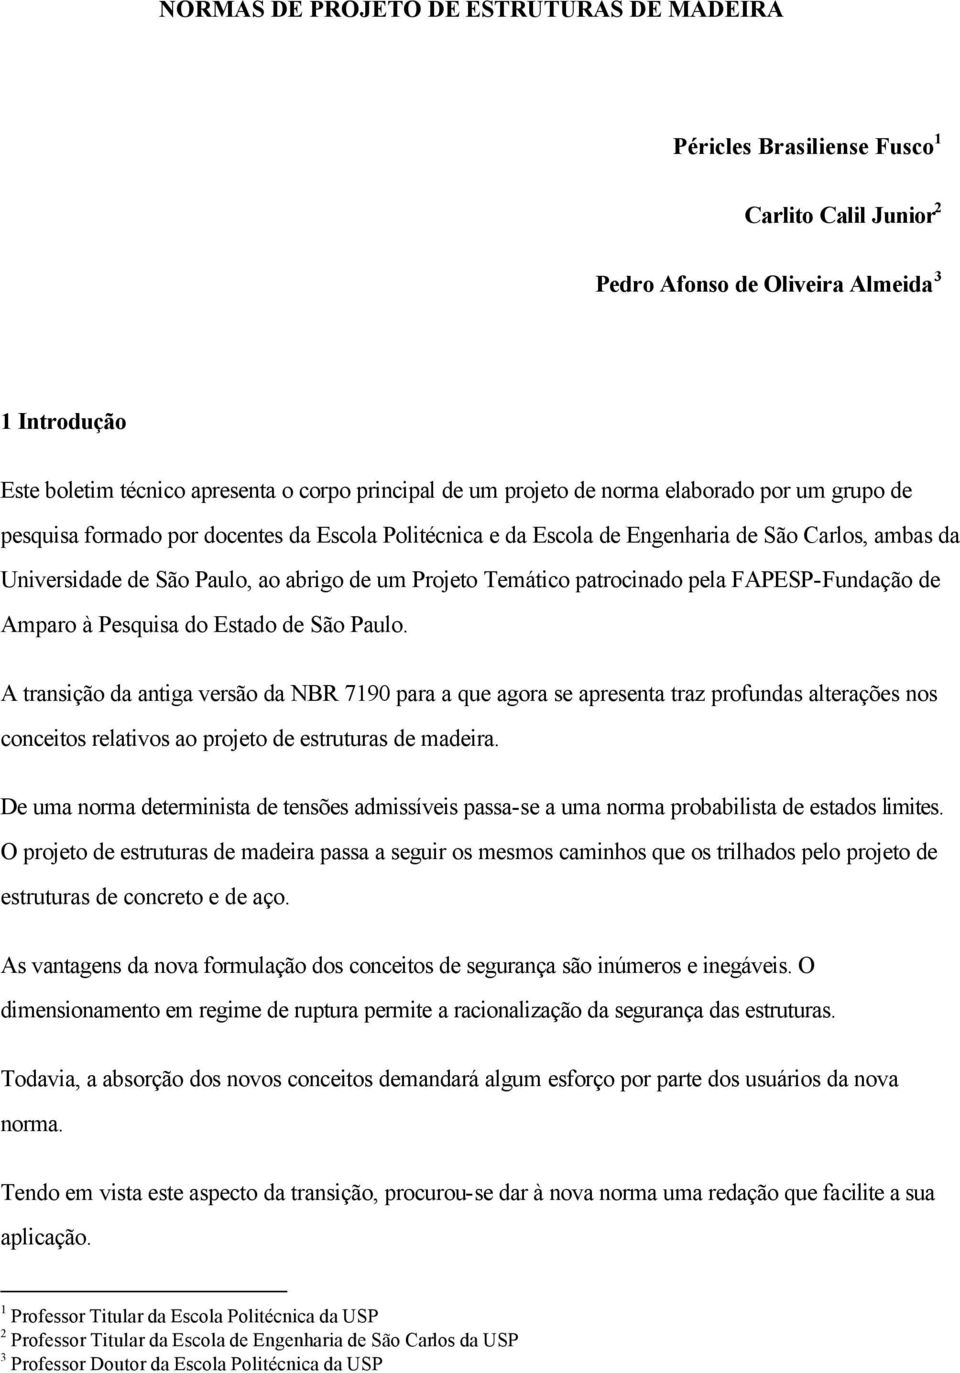 Temático patrocinado pela FAPESP-Fundação de Amparo à Pesquisa do Estado de São Paulo.